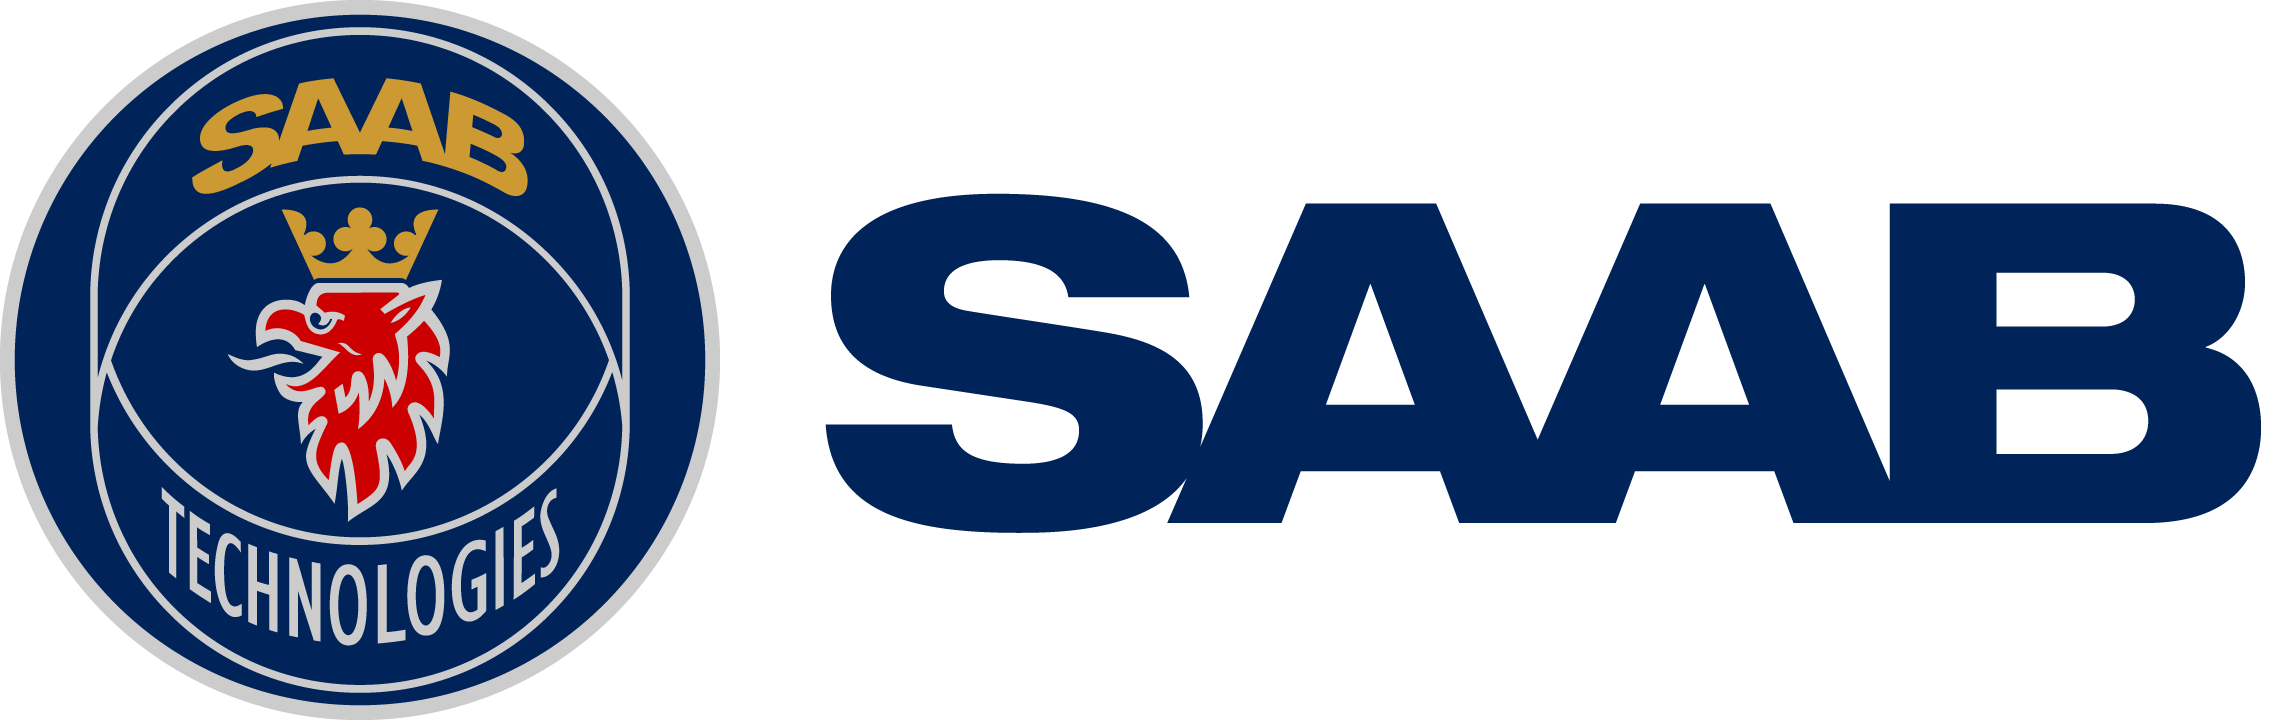 SAAB Company Logo